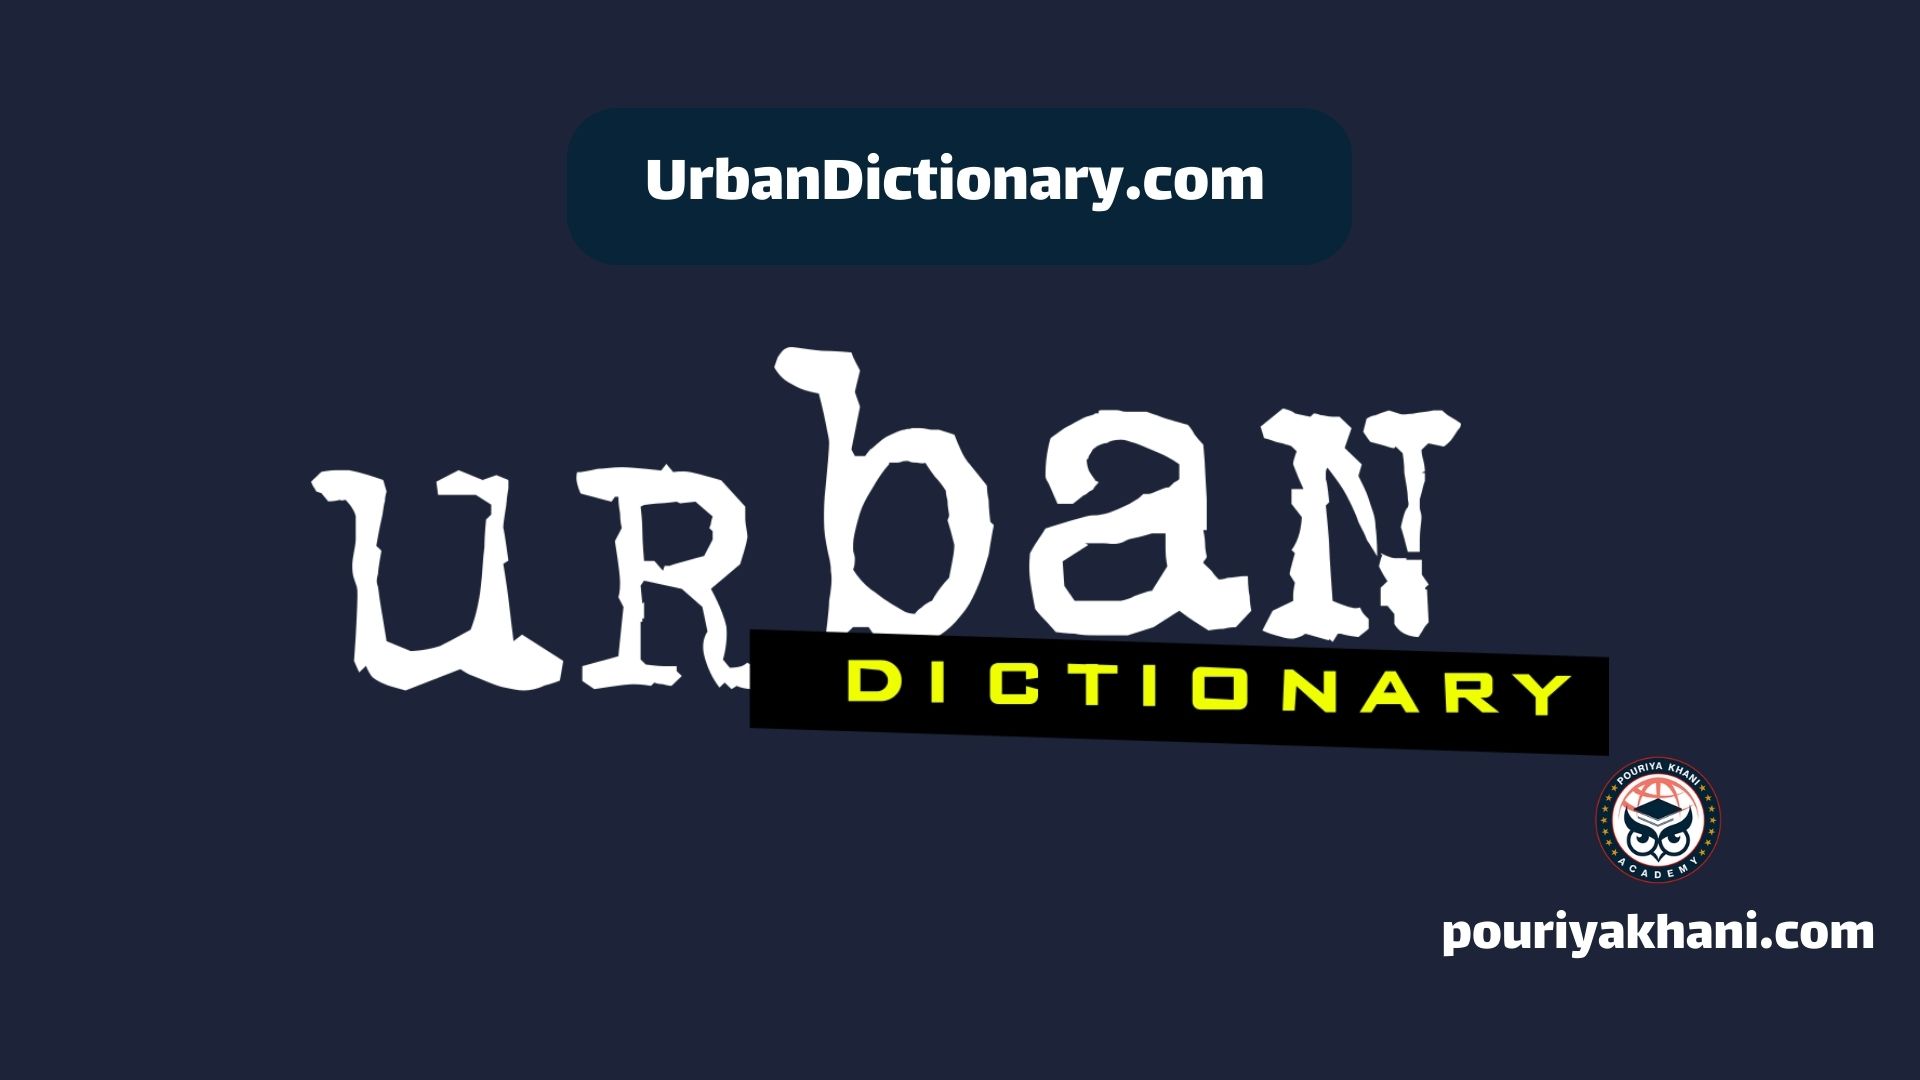 UrbanDictionary.com